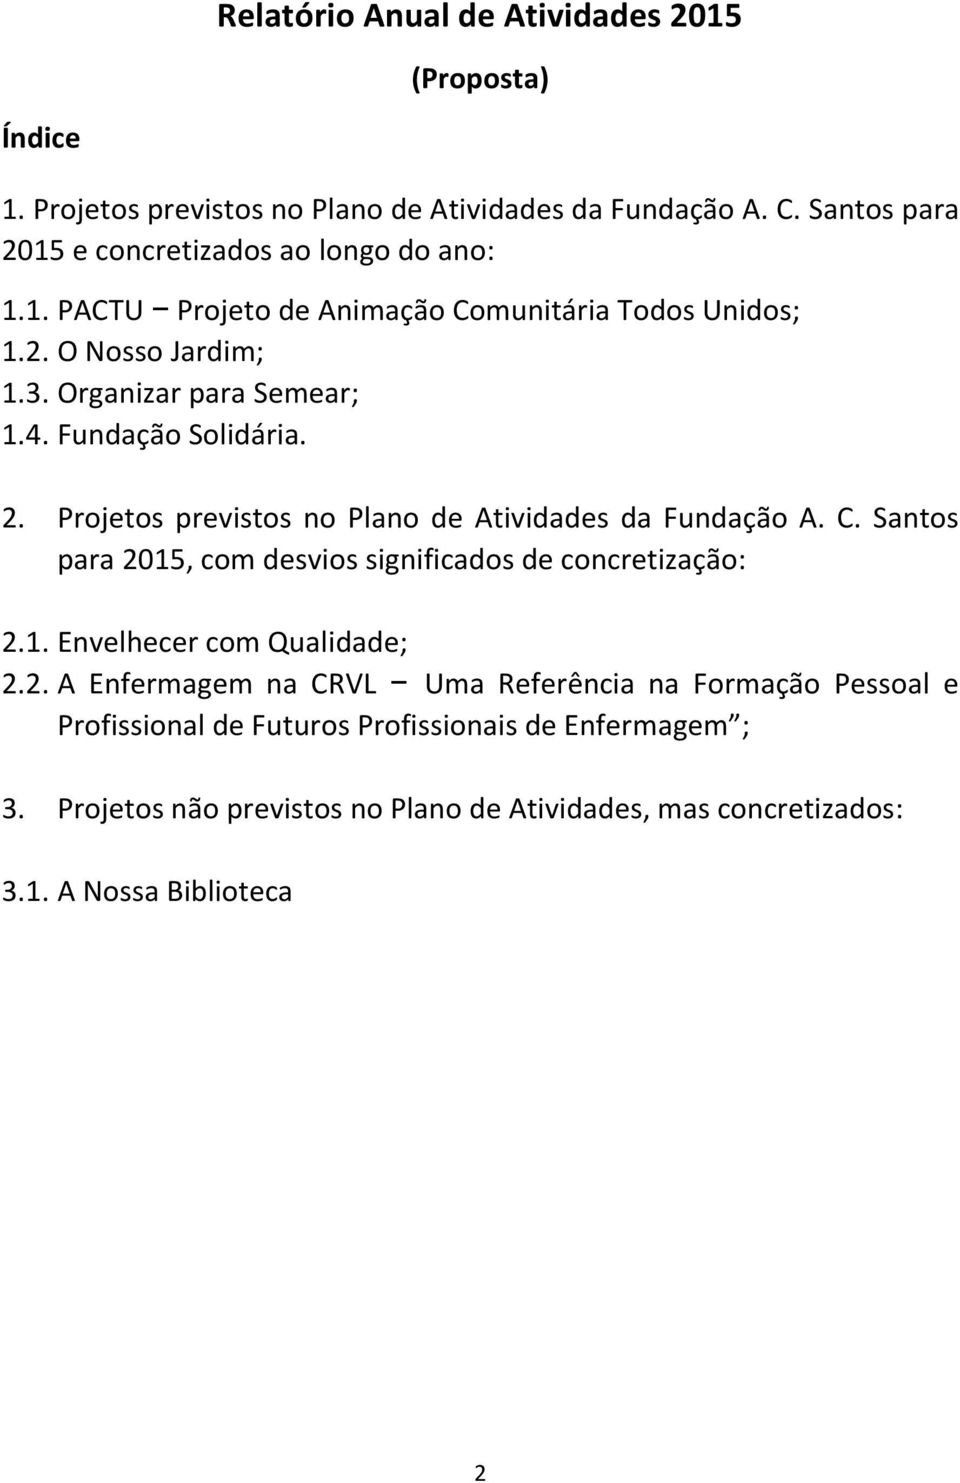 Fundação Solidária. 2. Projetos previstos no Plano de Atividades da Fundação A. C. Santos para 2015, com desvios significados de concretização: 2.1. Envelhecer com Qualidade; 2.